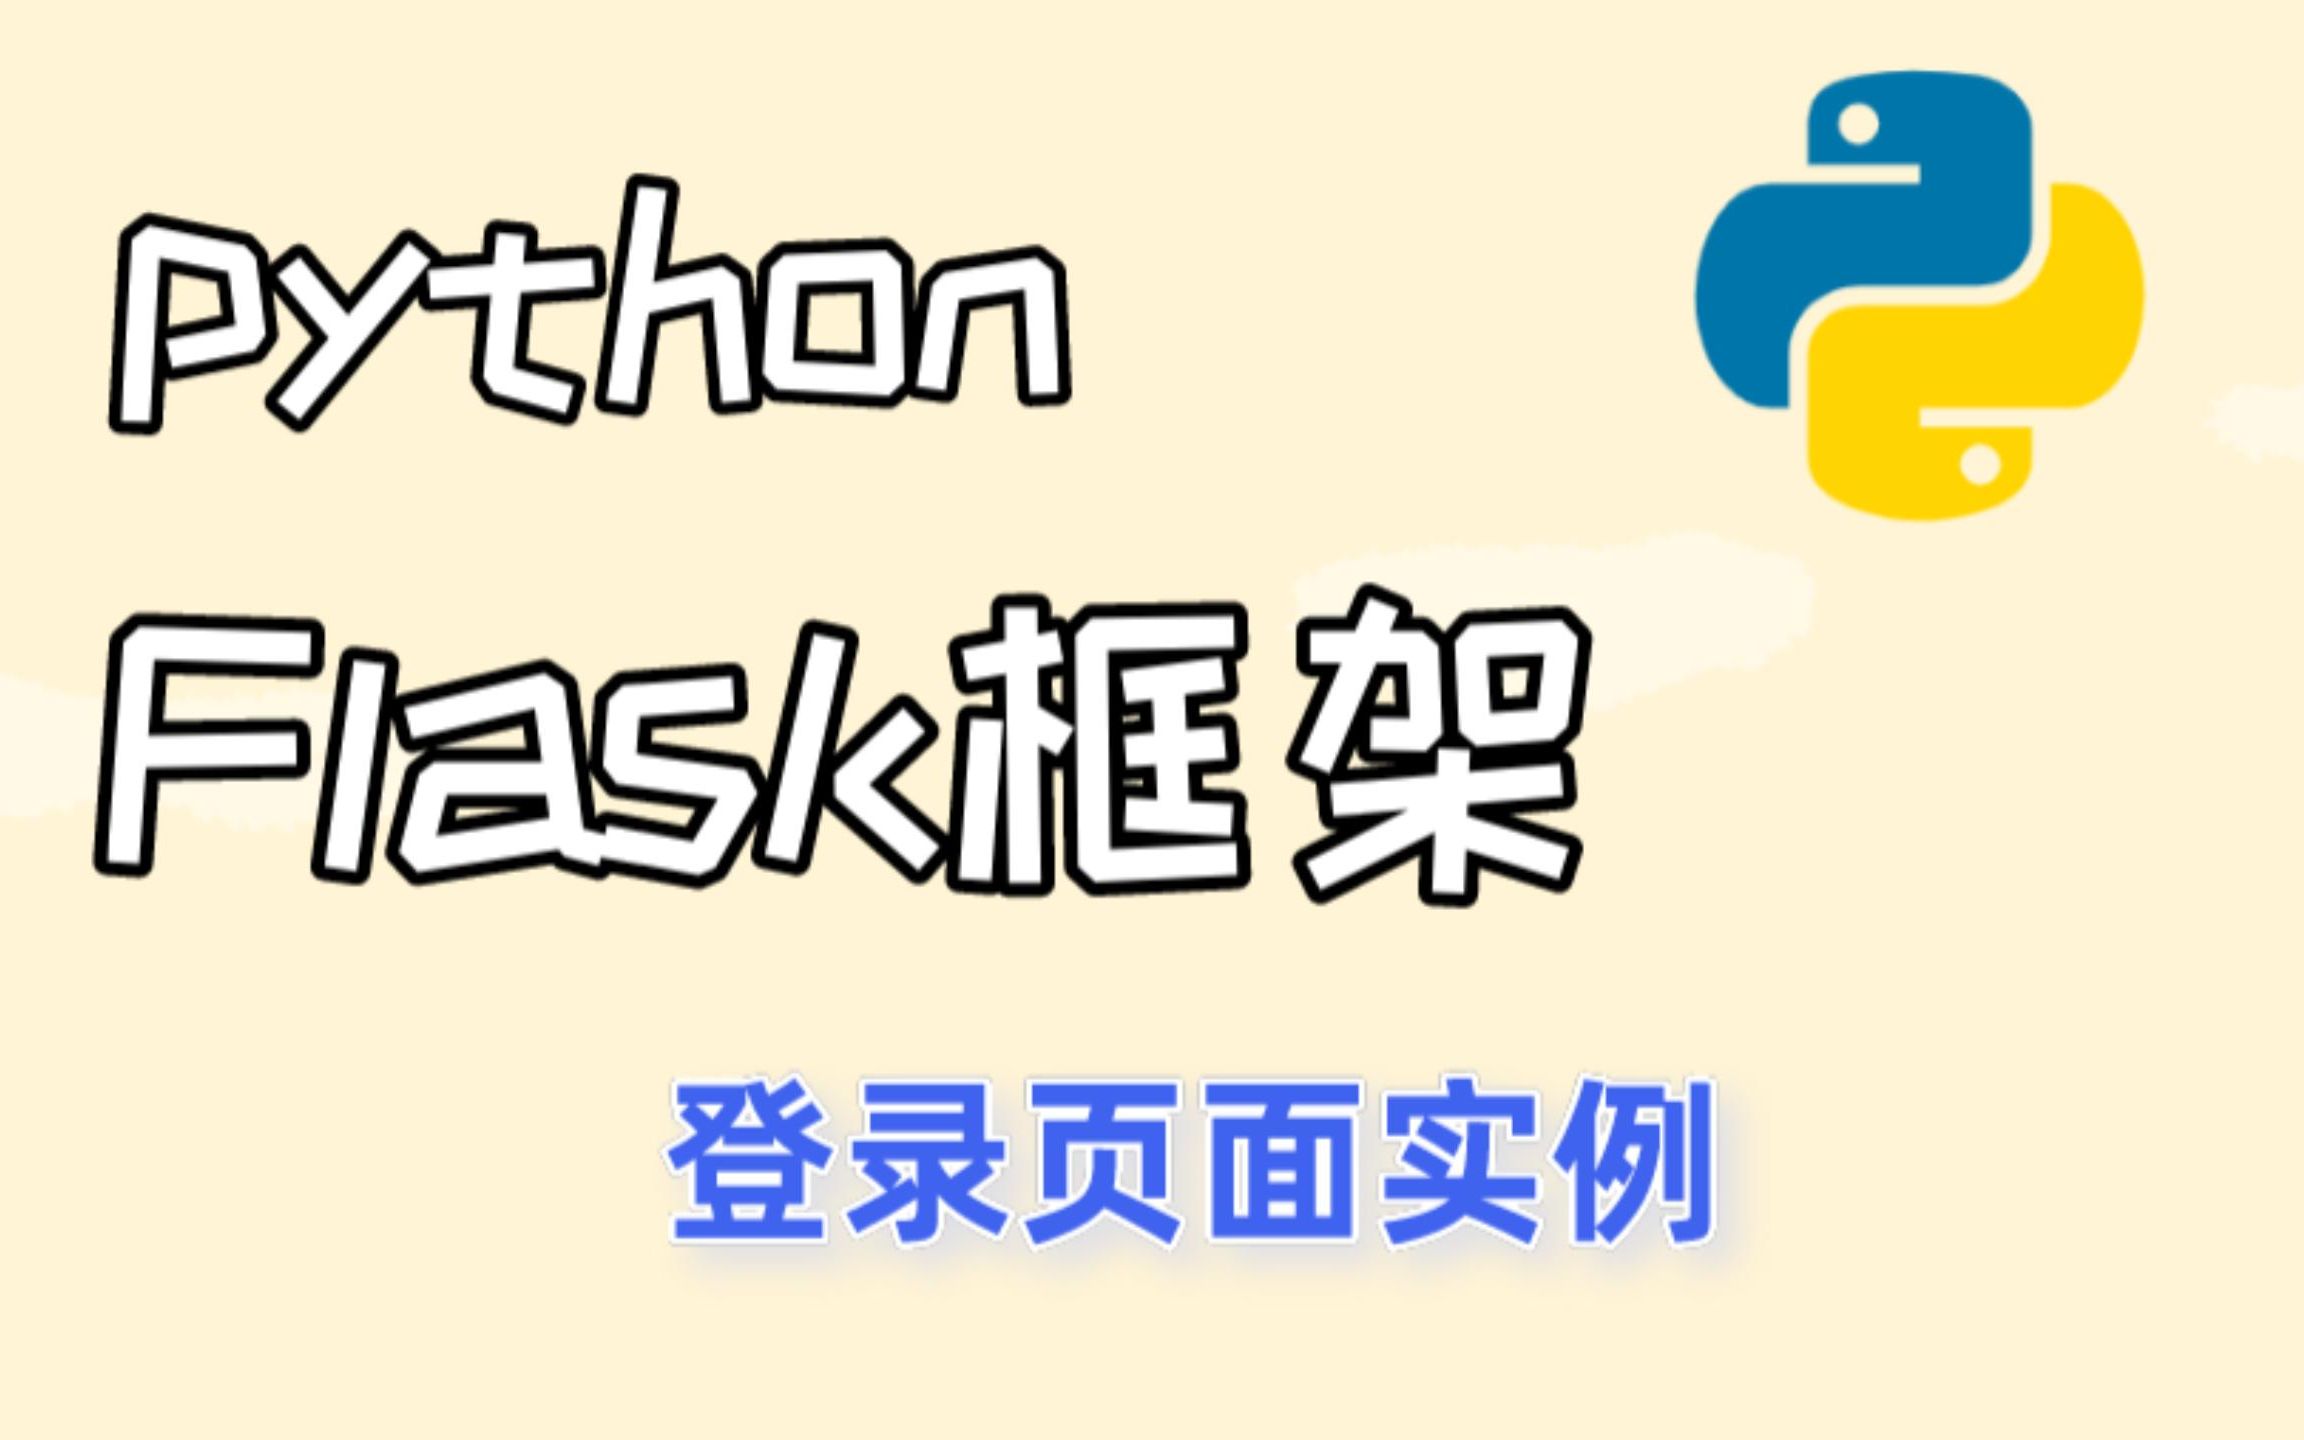 趣学python算法100例源码 - 开发实例、源码下载 - 好例子网